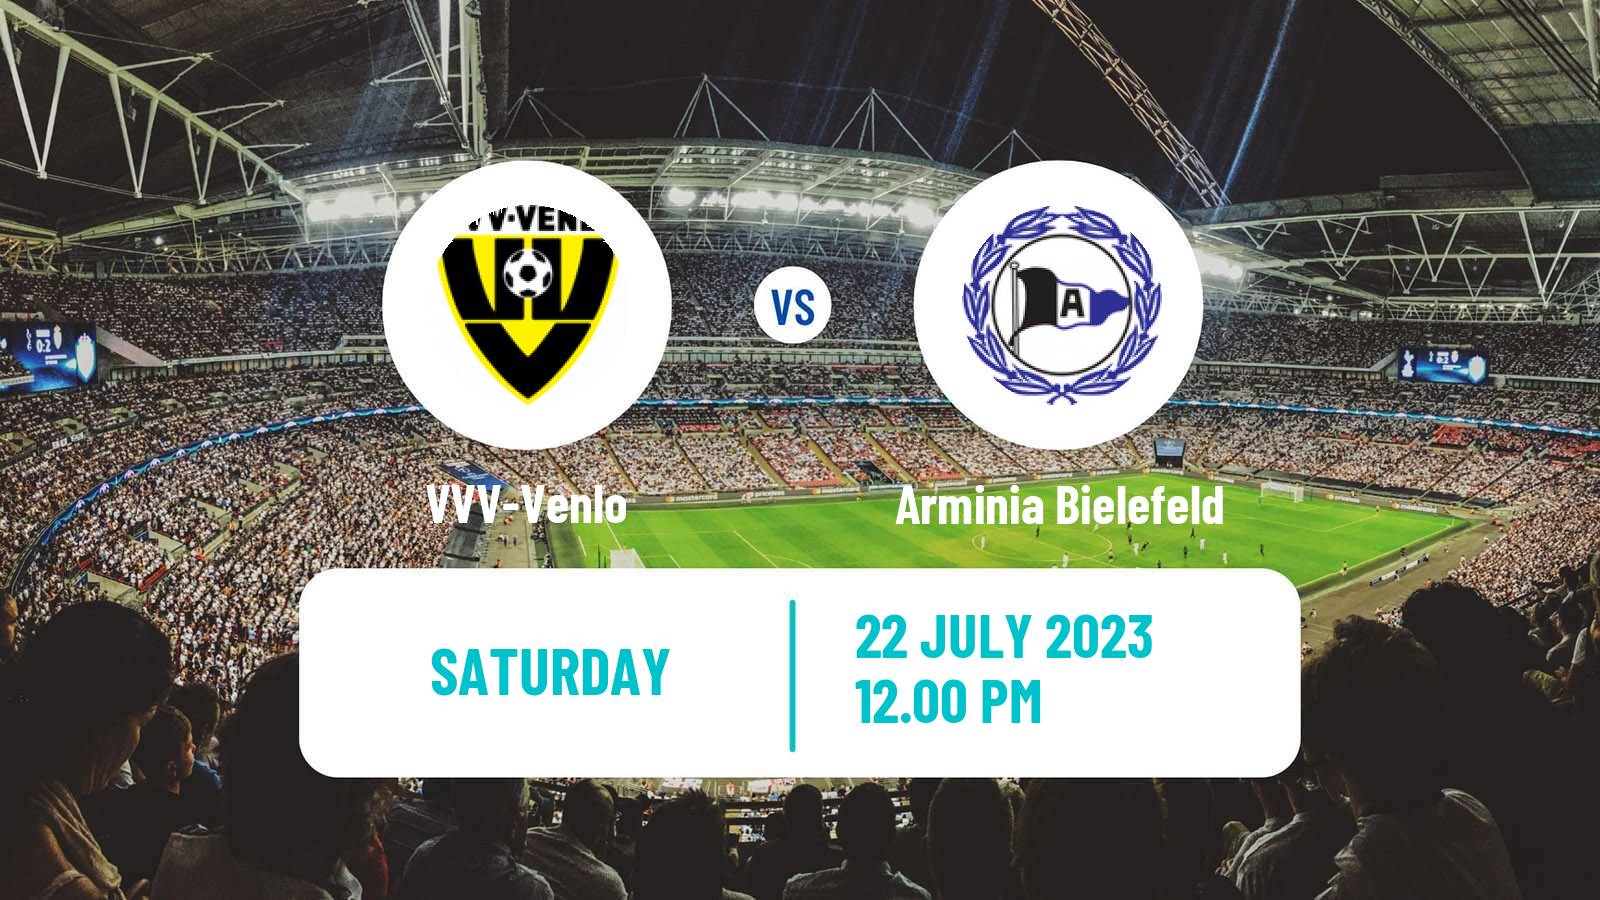 Soccer Club Friendly VVV-Venlo - Arminia Bielefeld